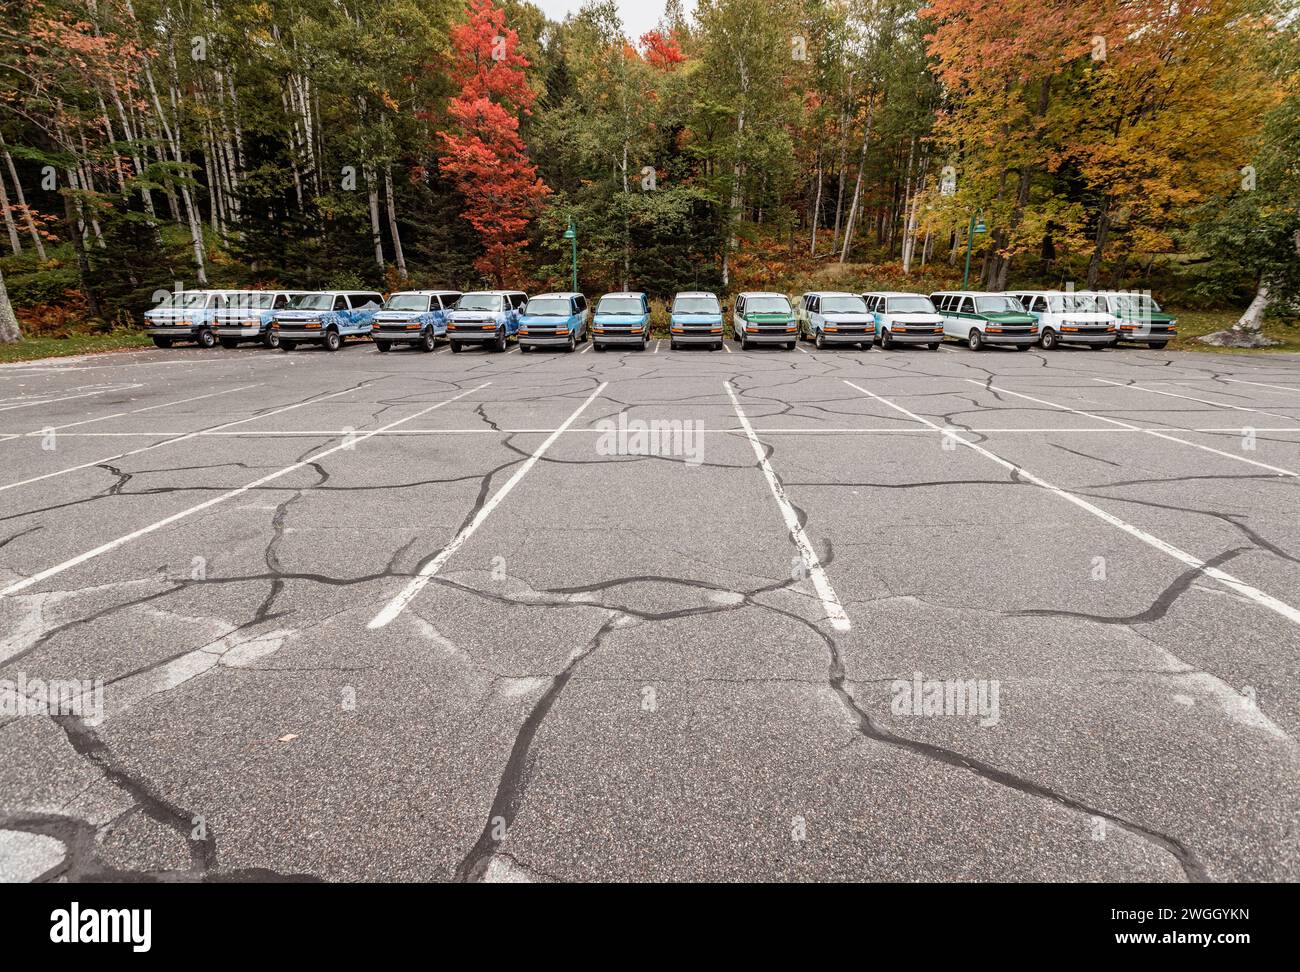 Ein großer Parkplatz mit einer Reihe von Kleinbussen in einer Reihe. Stockfoto